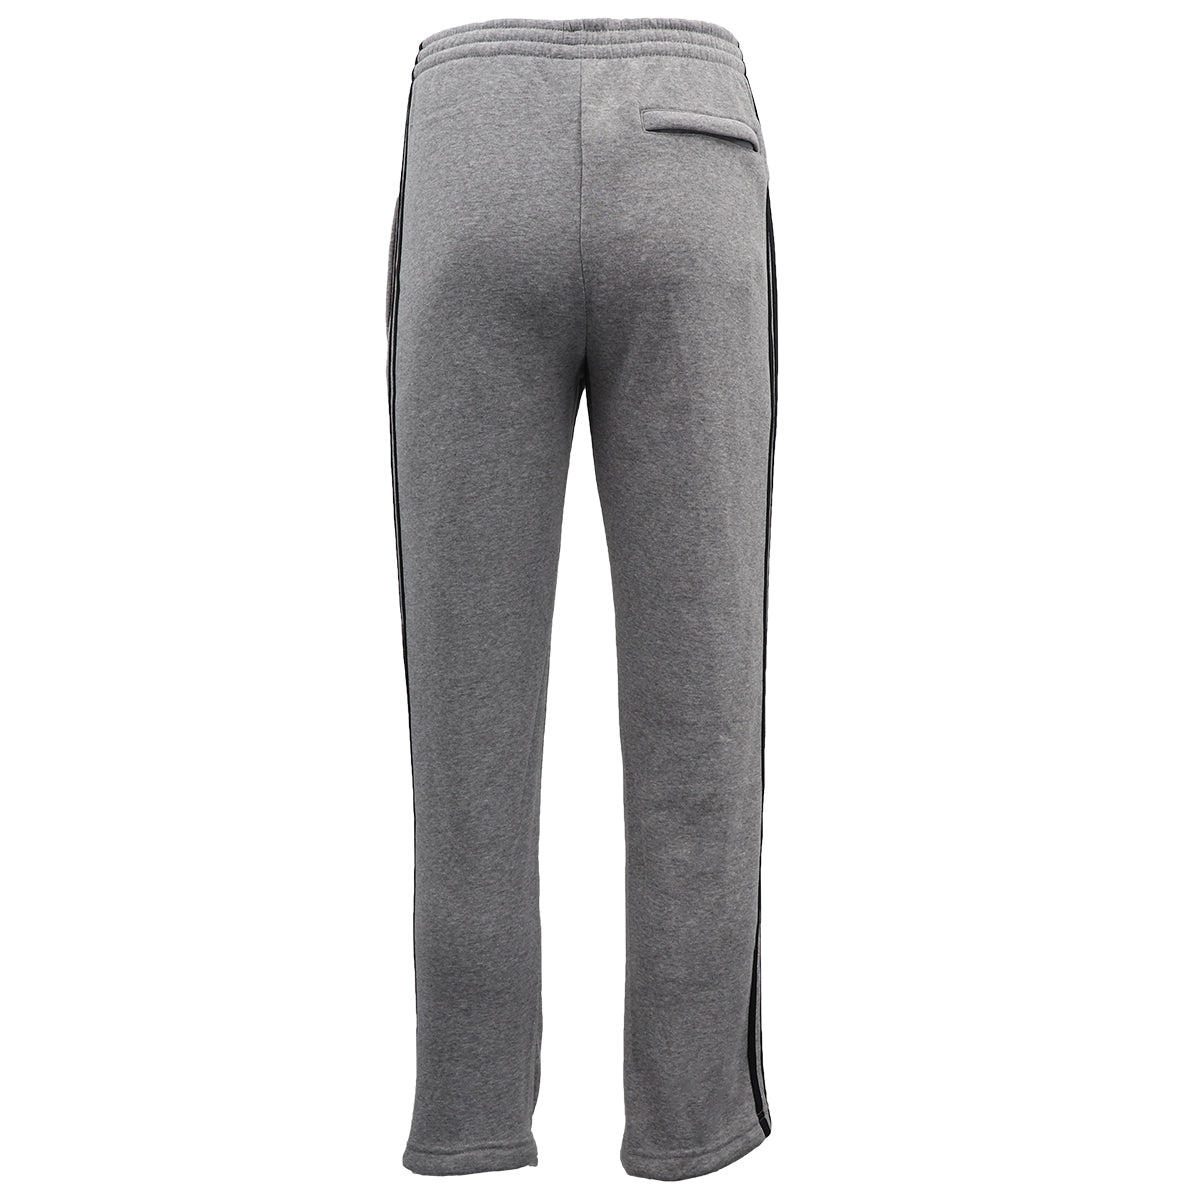 Men's Fleece Casual Sports Track Pants w Zip Pocket Striped Sweat Trousers S-6XL, Light Grey, L